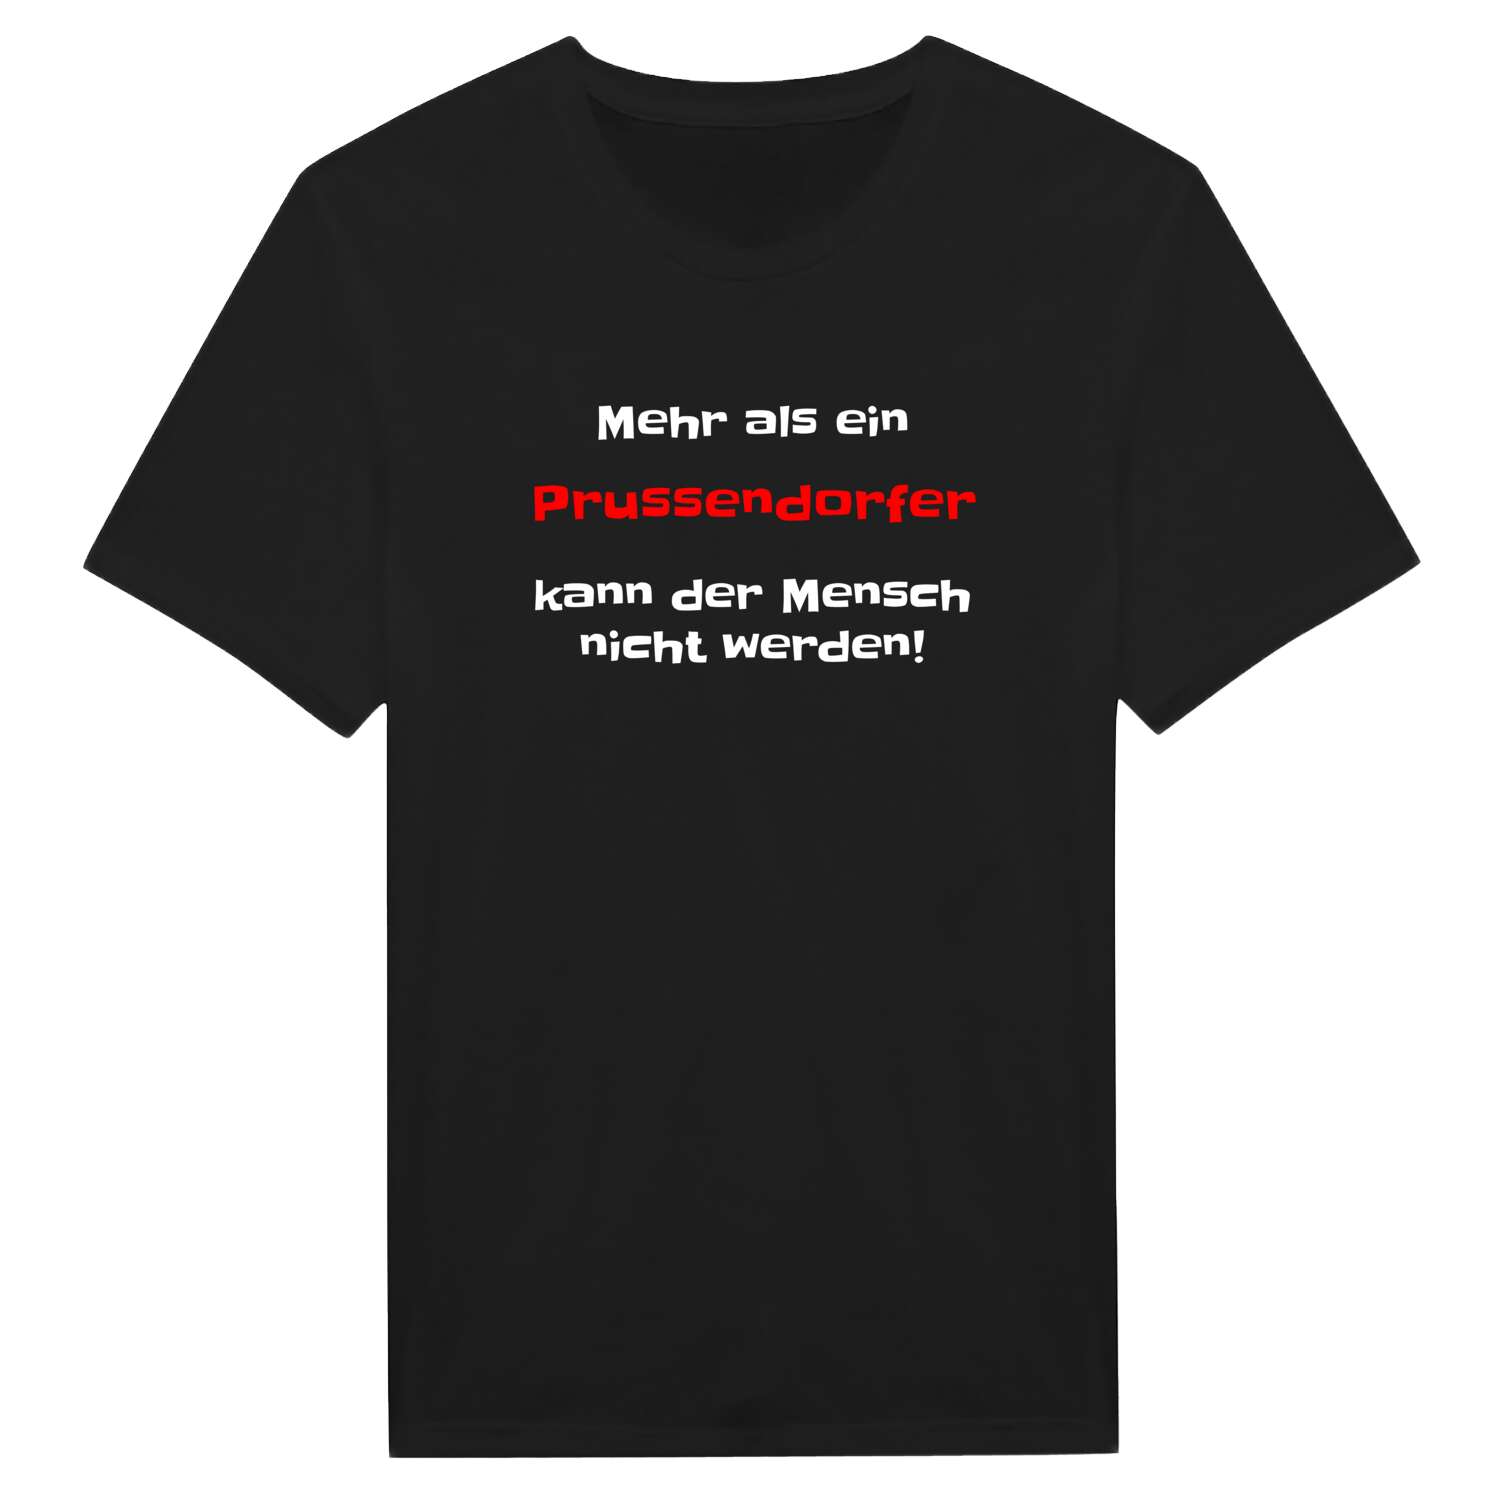 Prussendorf T-Shirt »Mehr als ein«